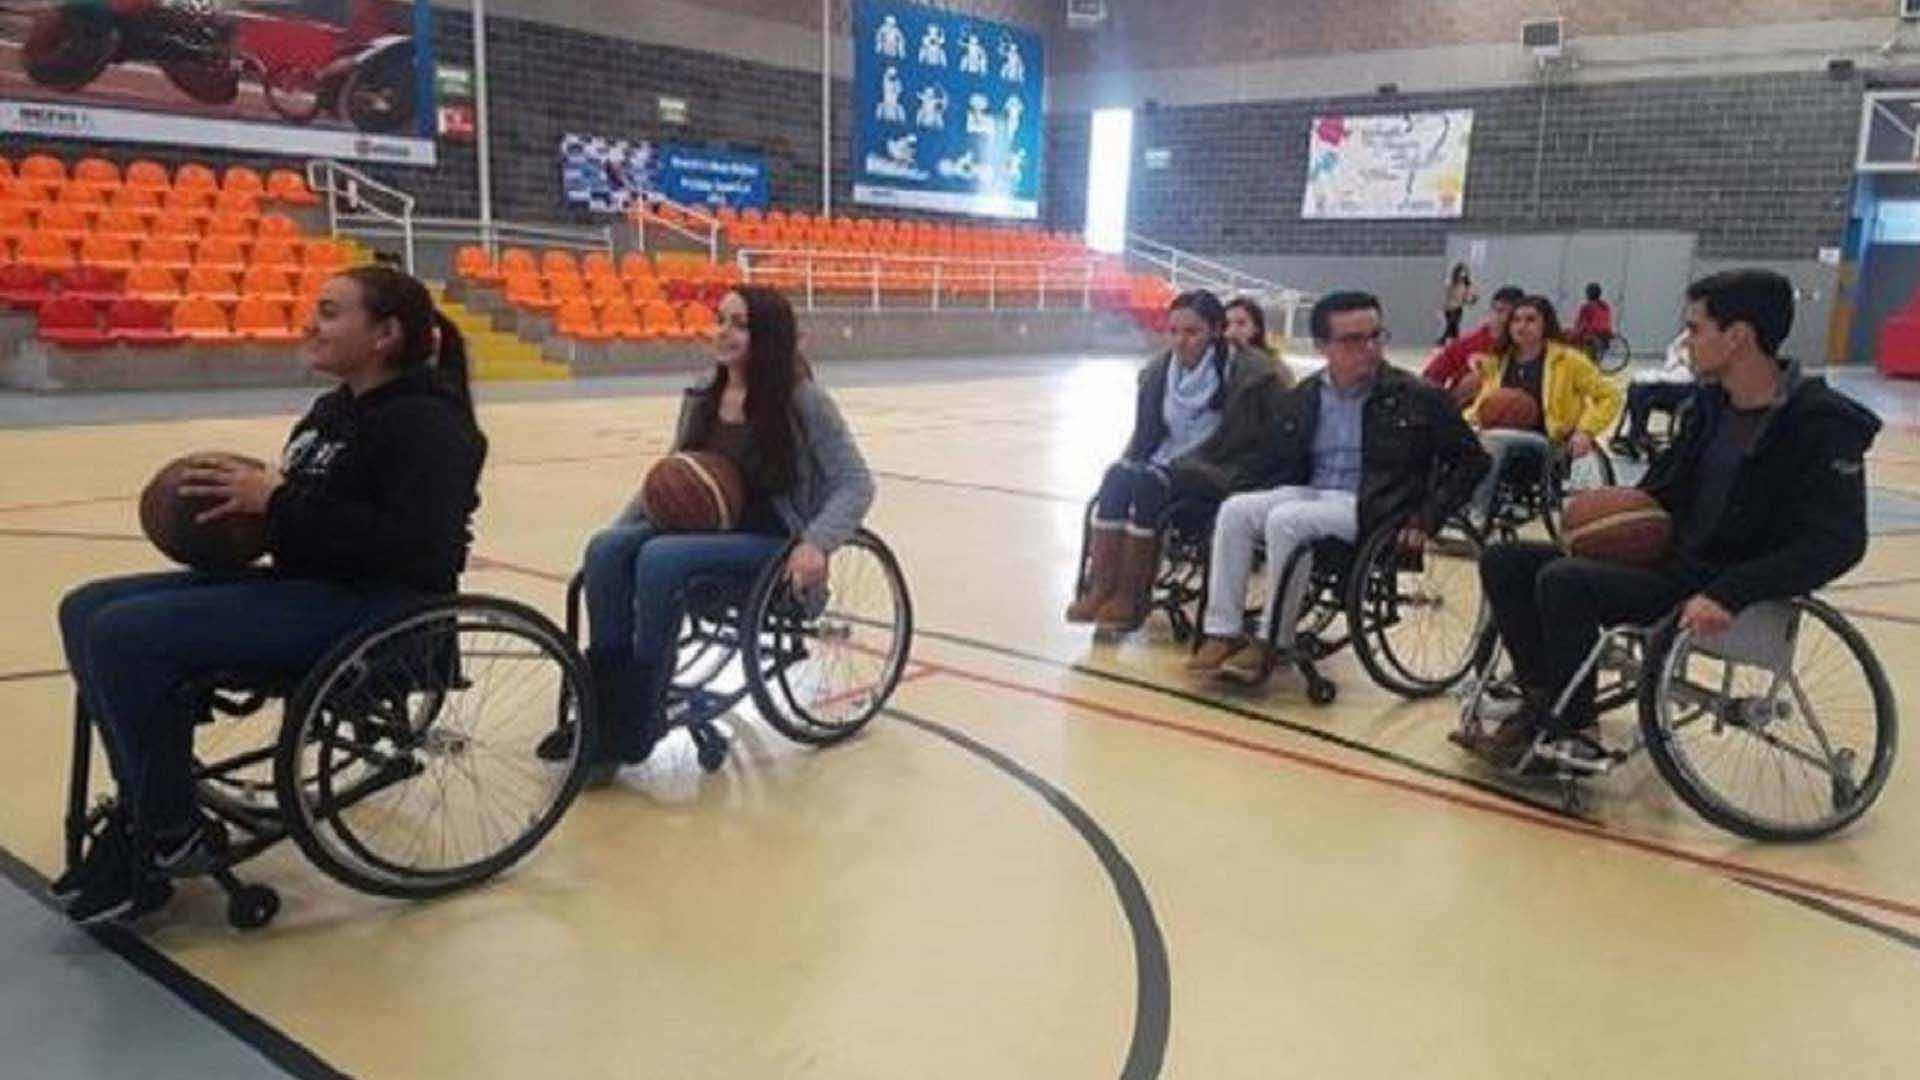 Durante un semestre los alumnos observaron las actividades y se involucraron con las personas con discapacidad, para conocer sus necesidades